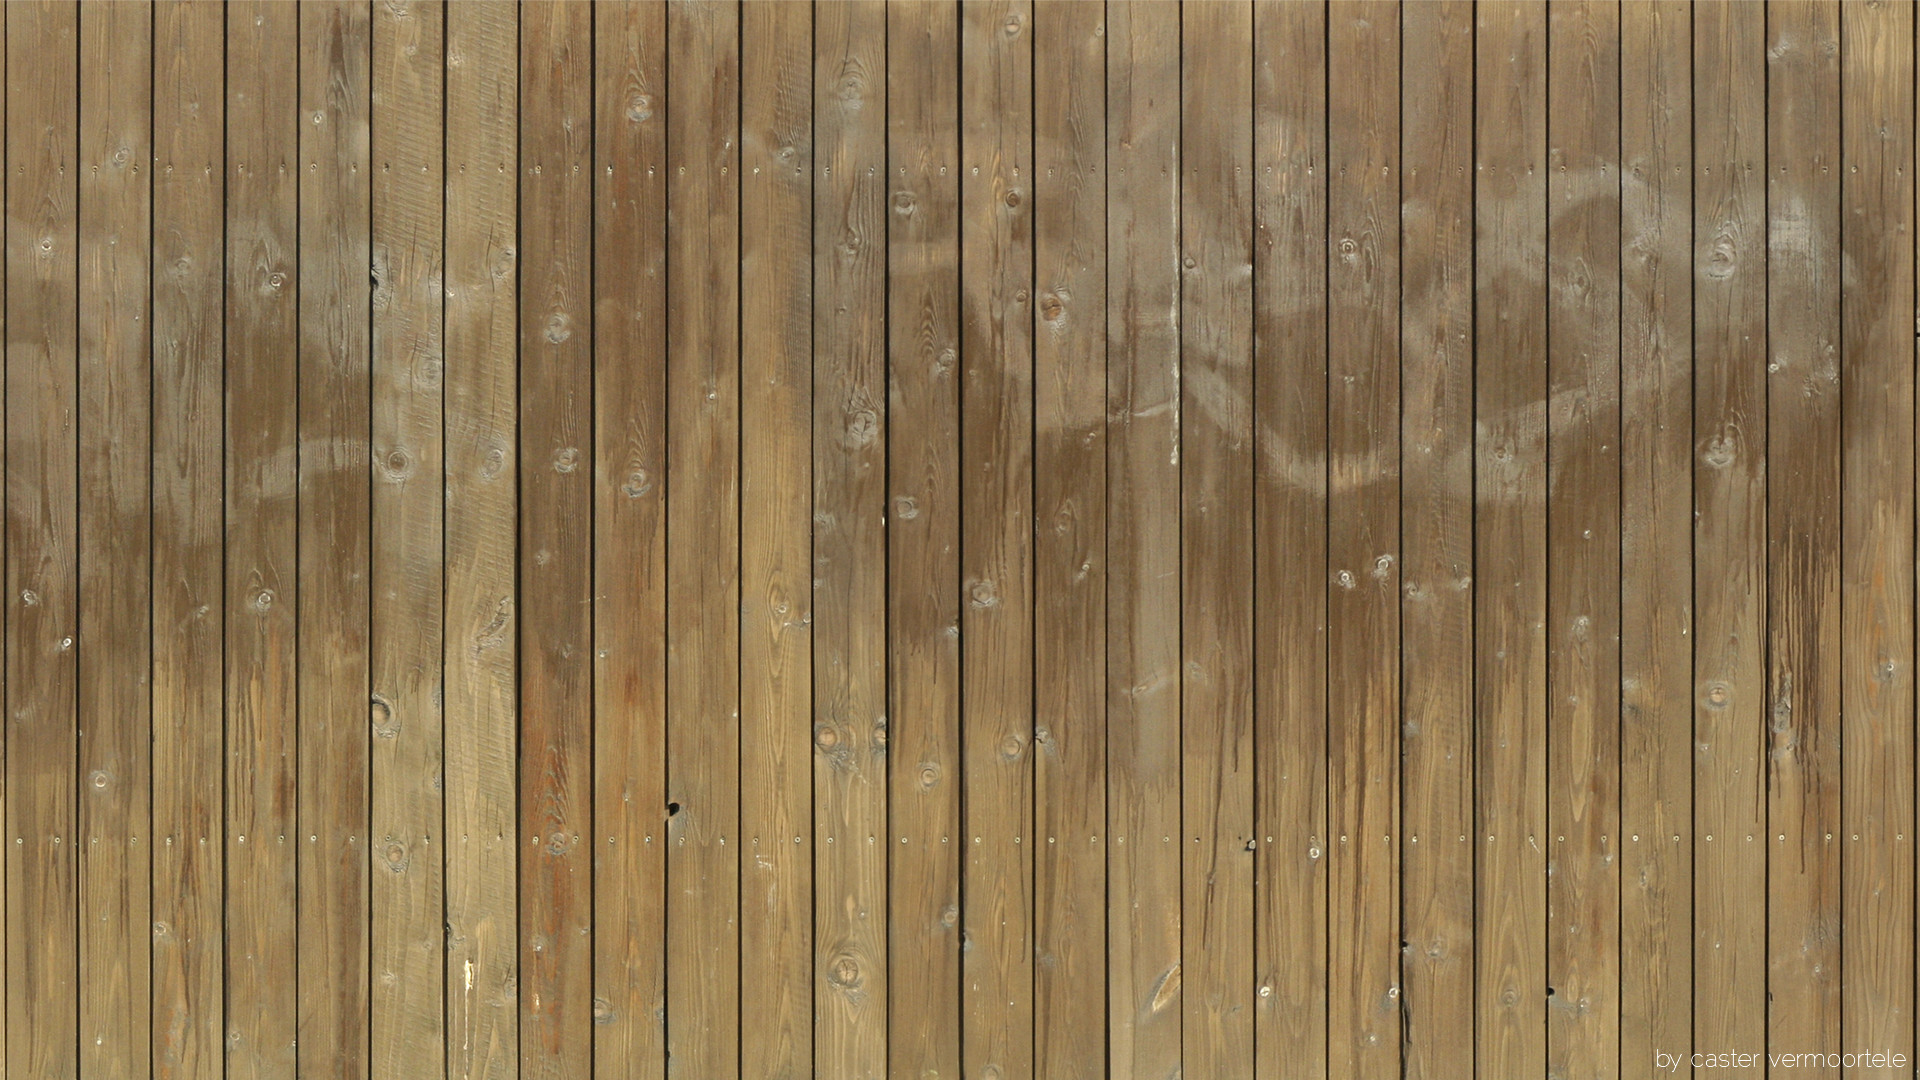 1920x1080 Grain Woodcut Floor HD Wallpaper